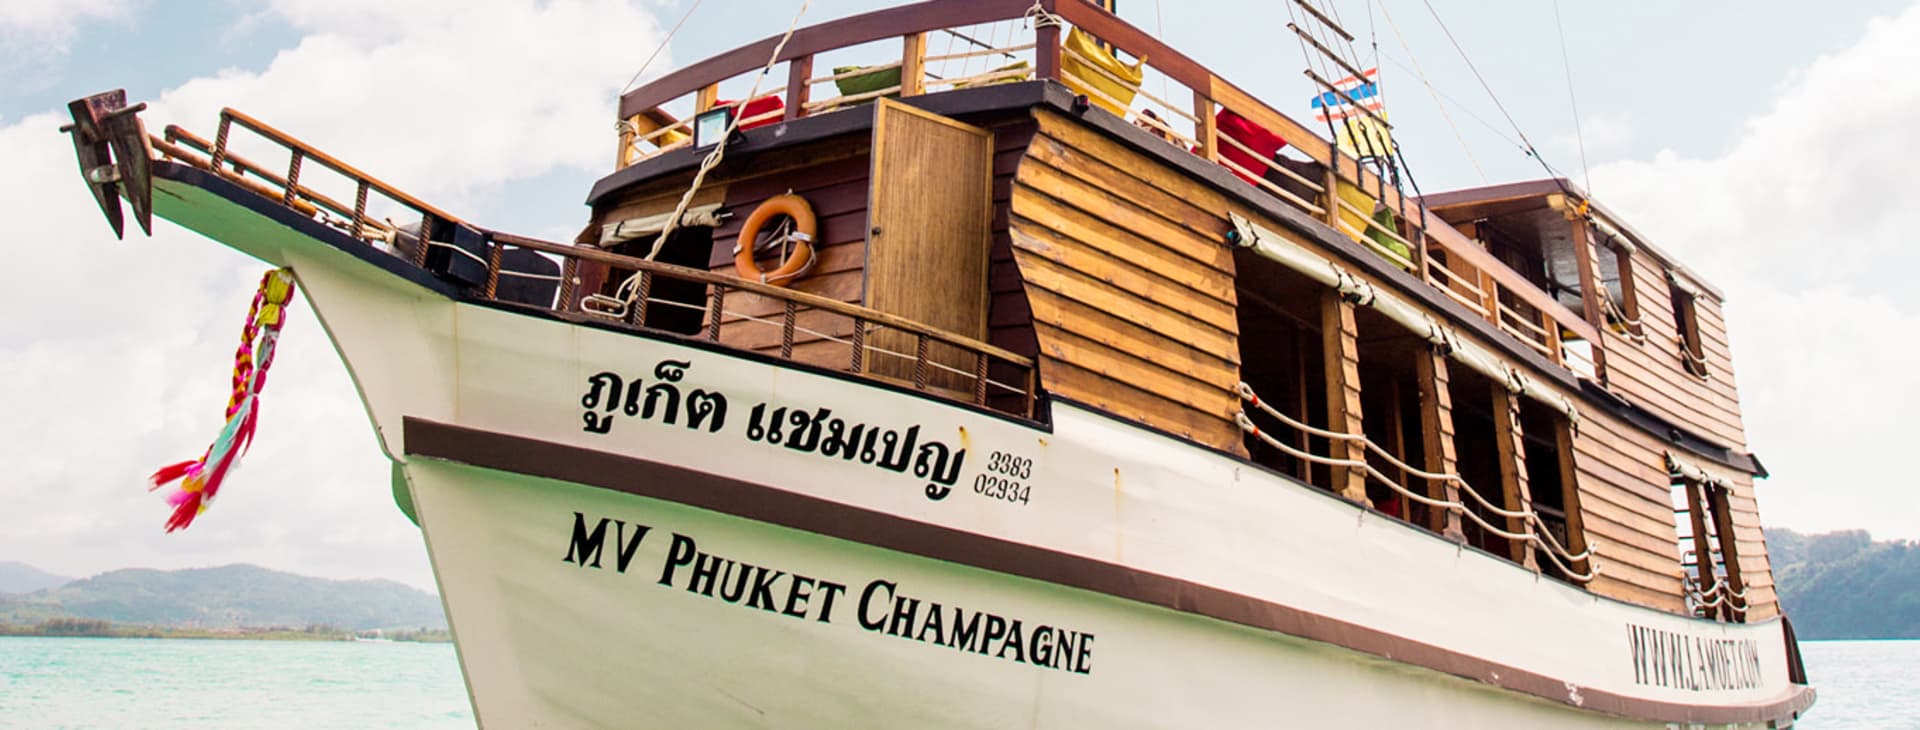 MV Phuket Champagne -veneellä merellä